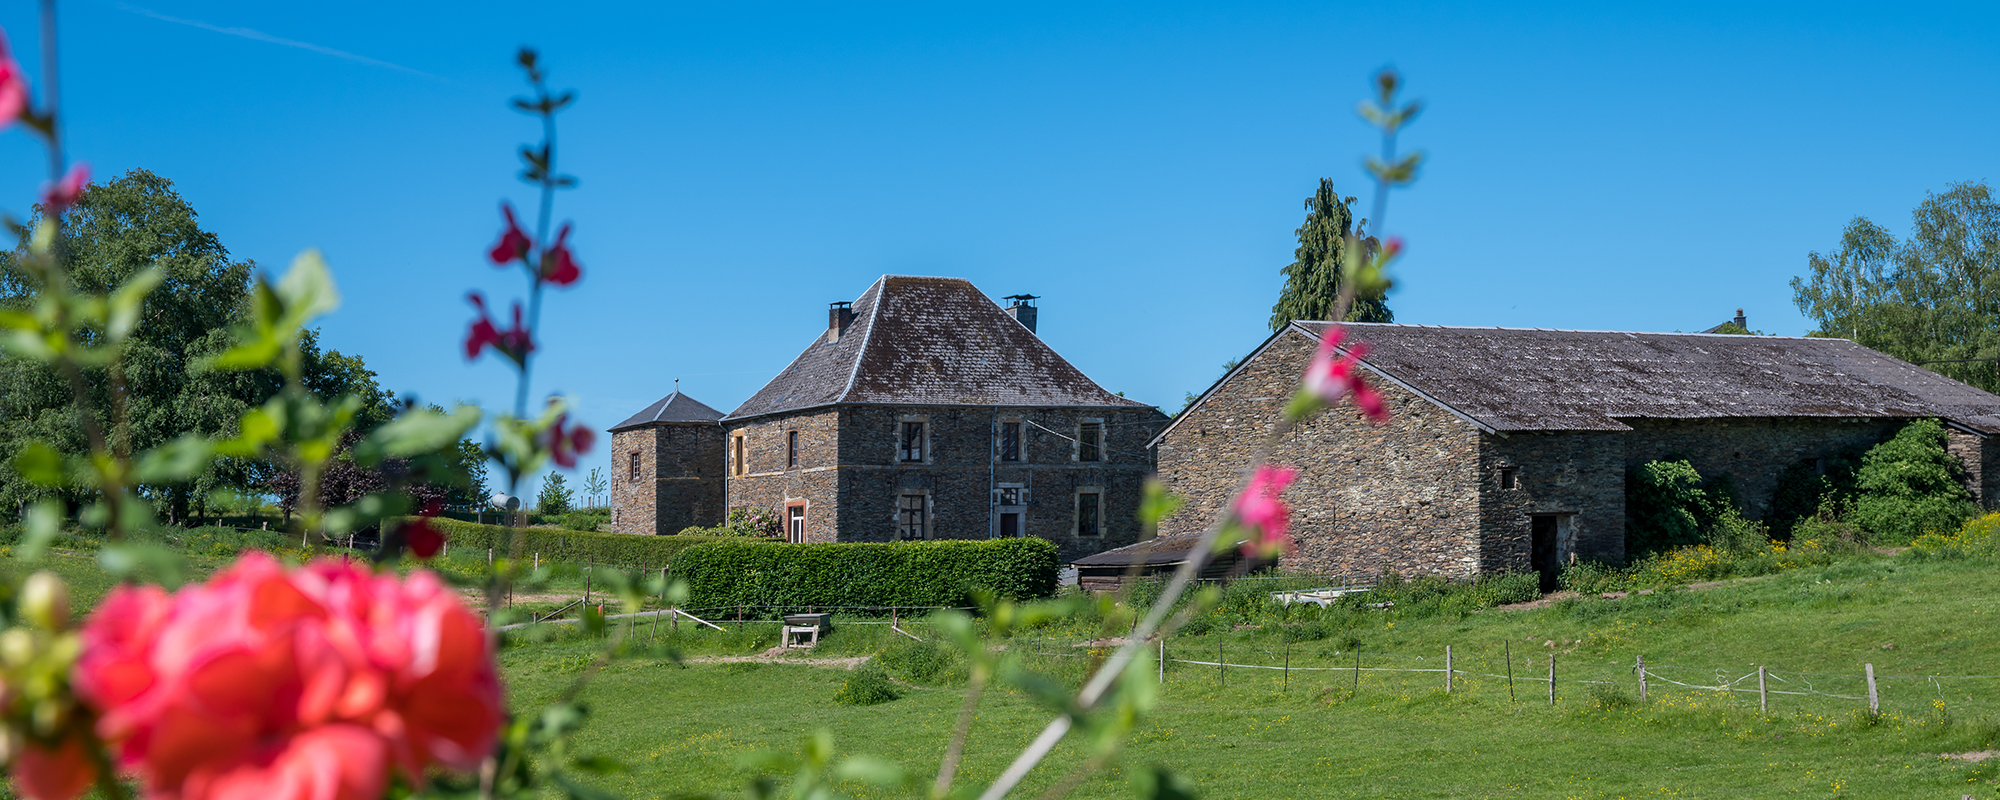 Gros-Fays, dorp met bewaarde gebouwen - Mooiste Dorpjes van Wallonië